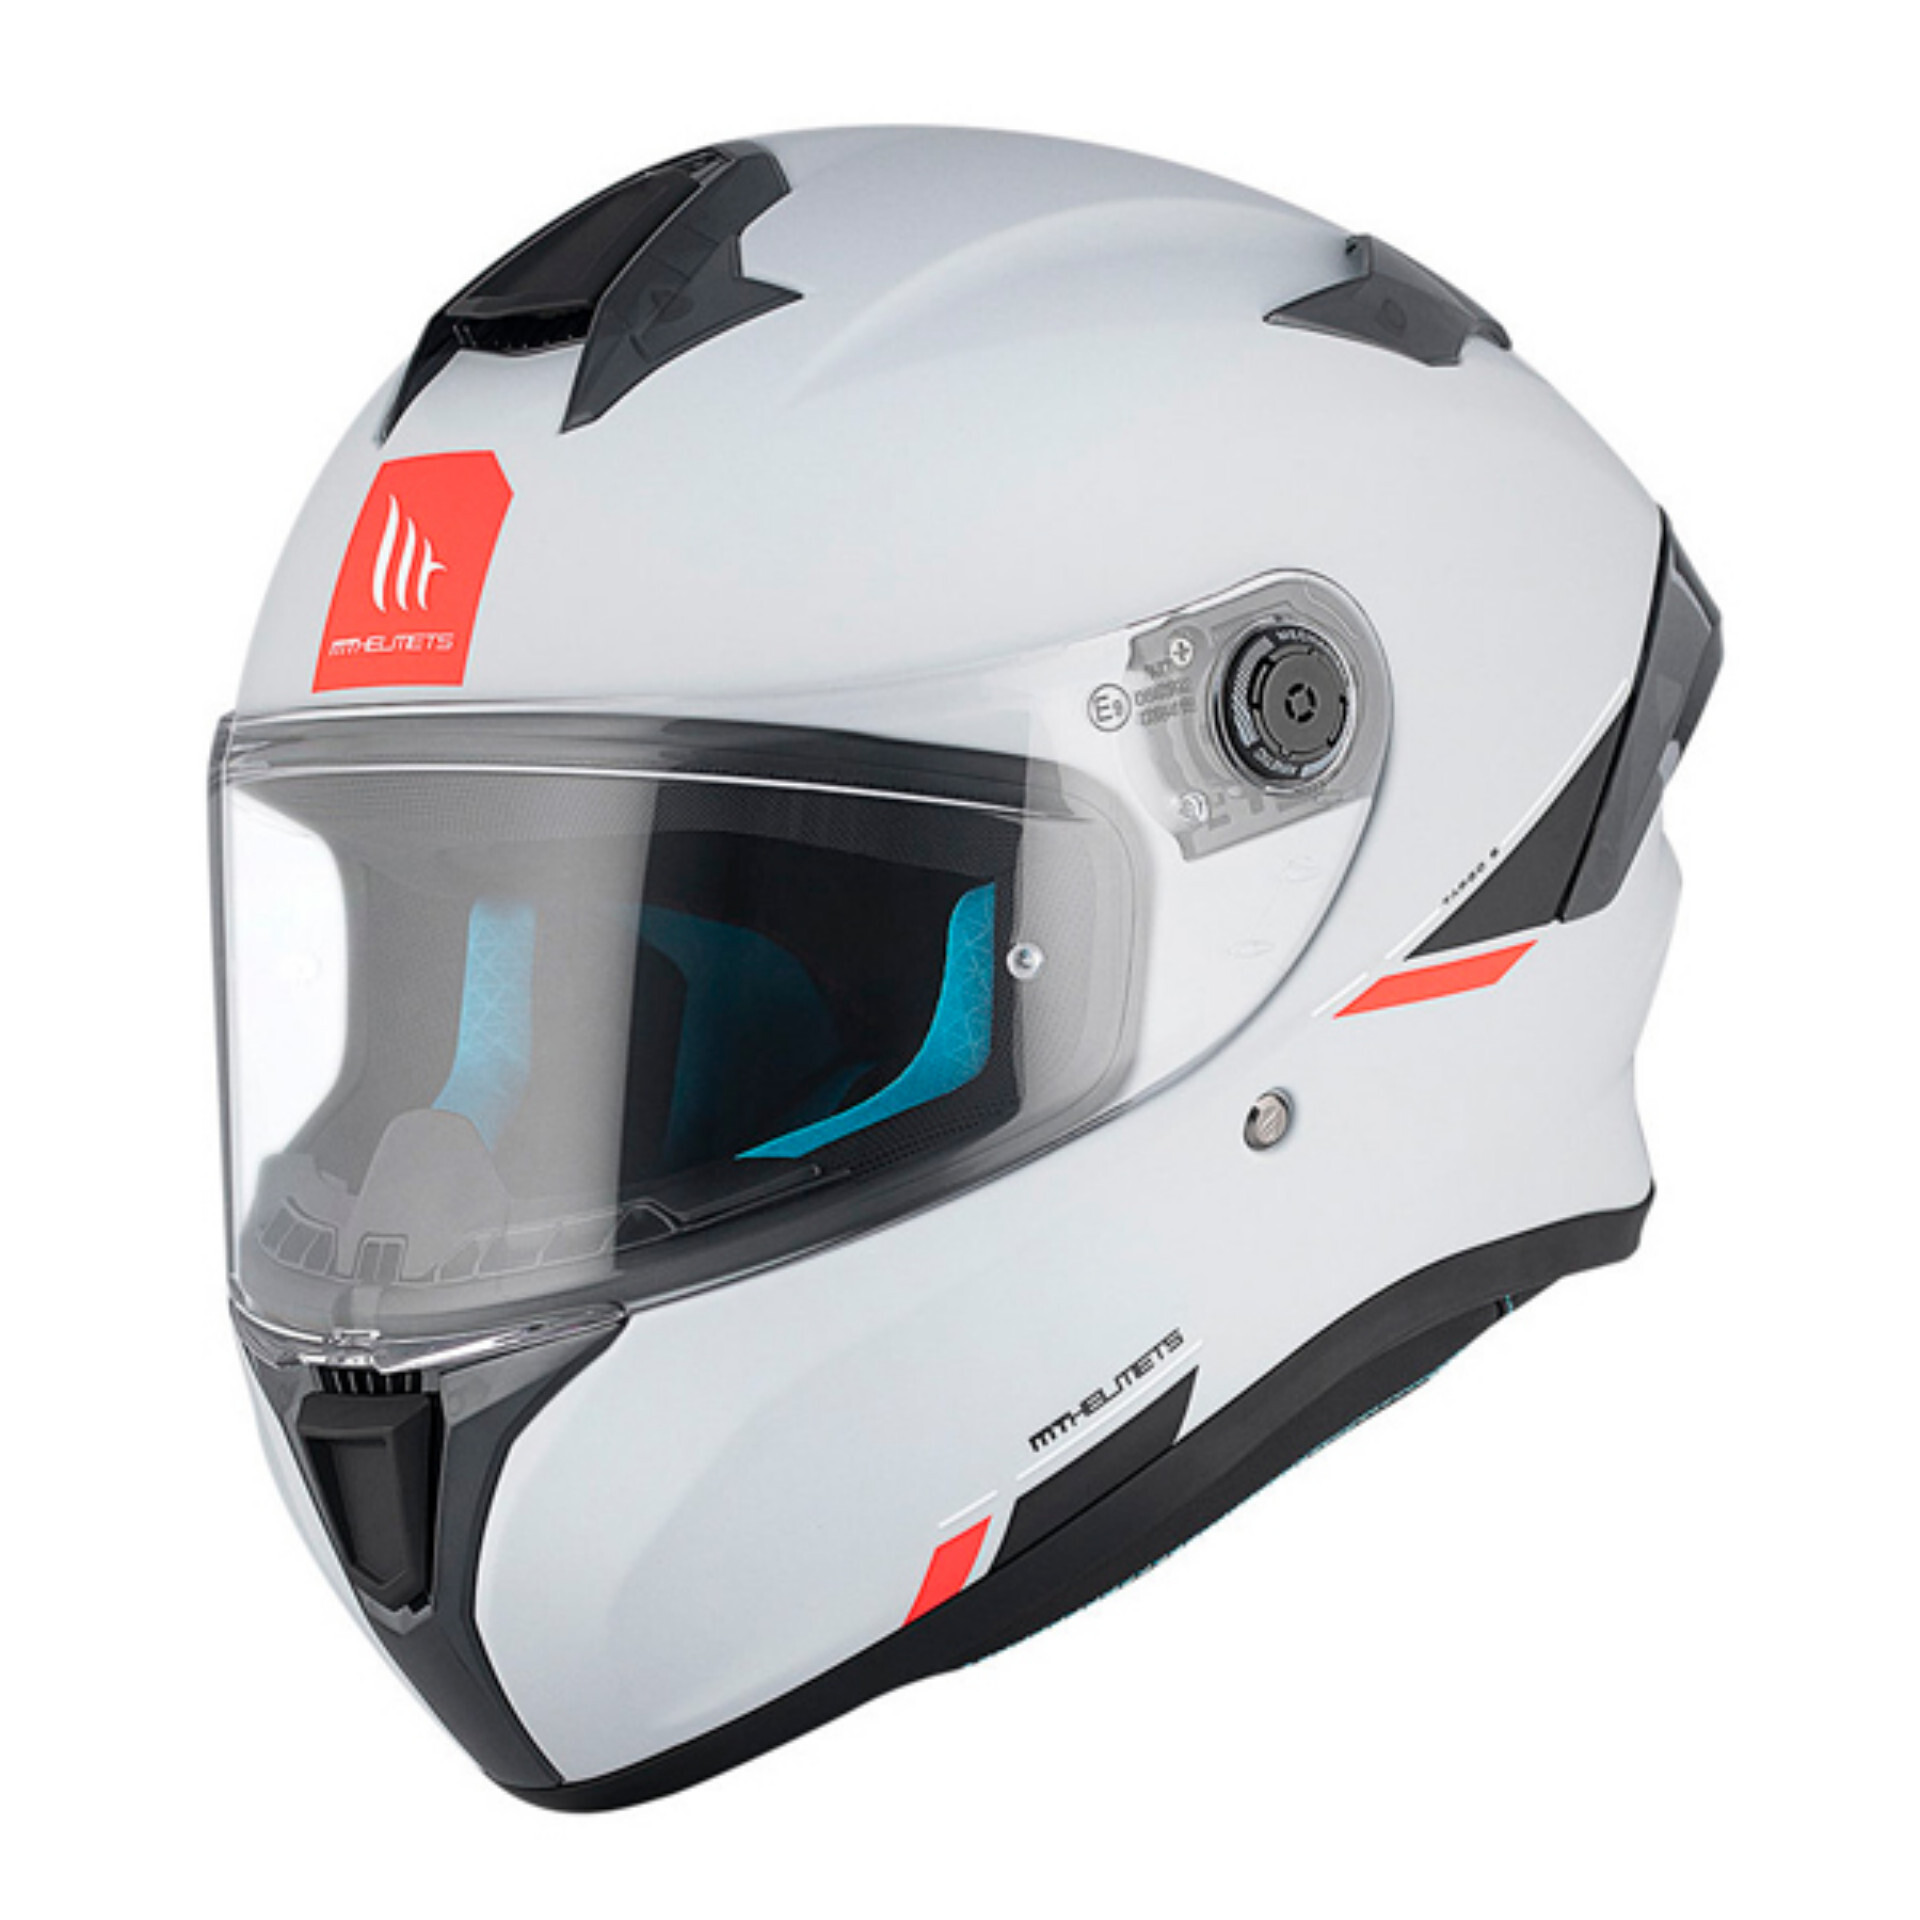 Full Face Motorcycle Helmet Mt Helmets THUNDER 4 SV MOUNTAIN C5 Matt Red  For Sale Online 